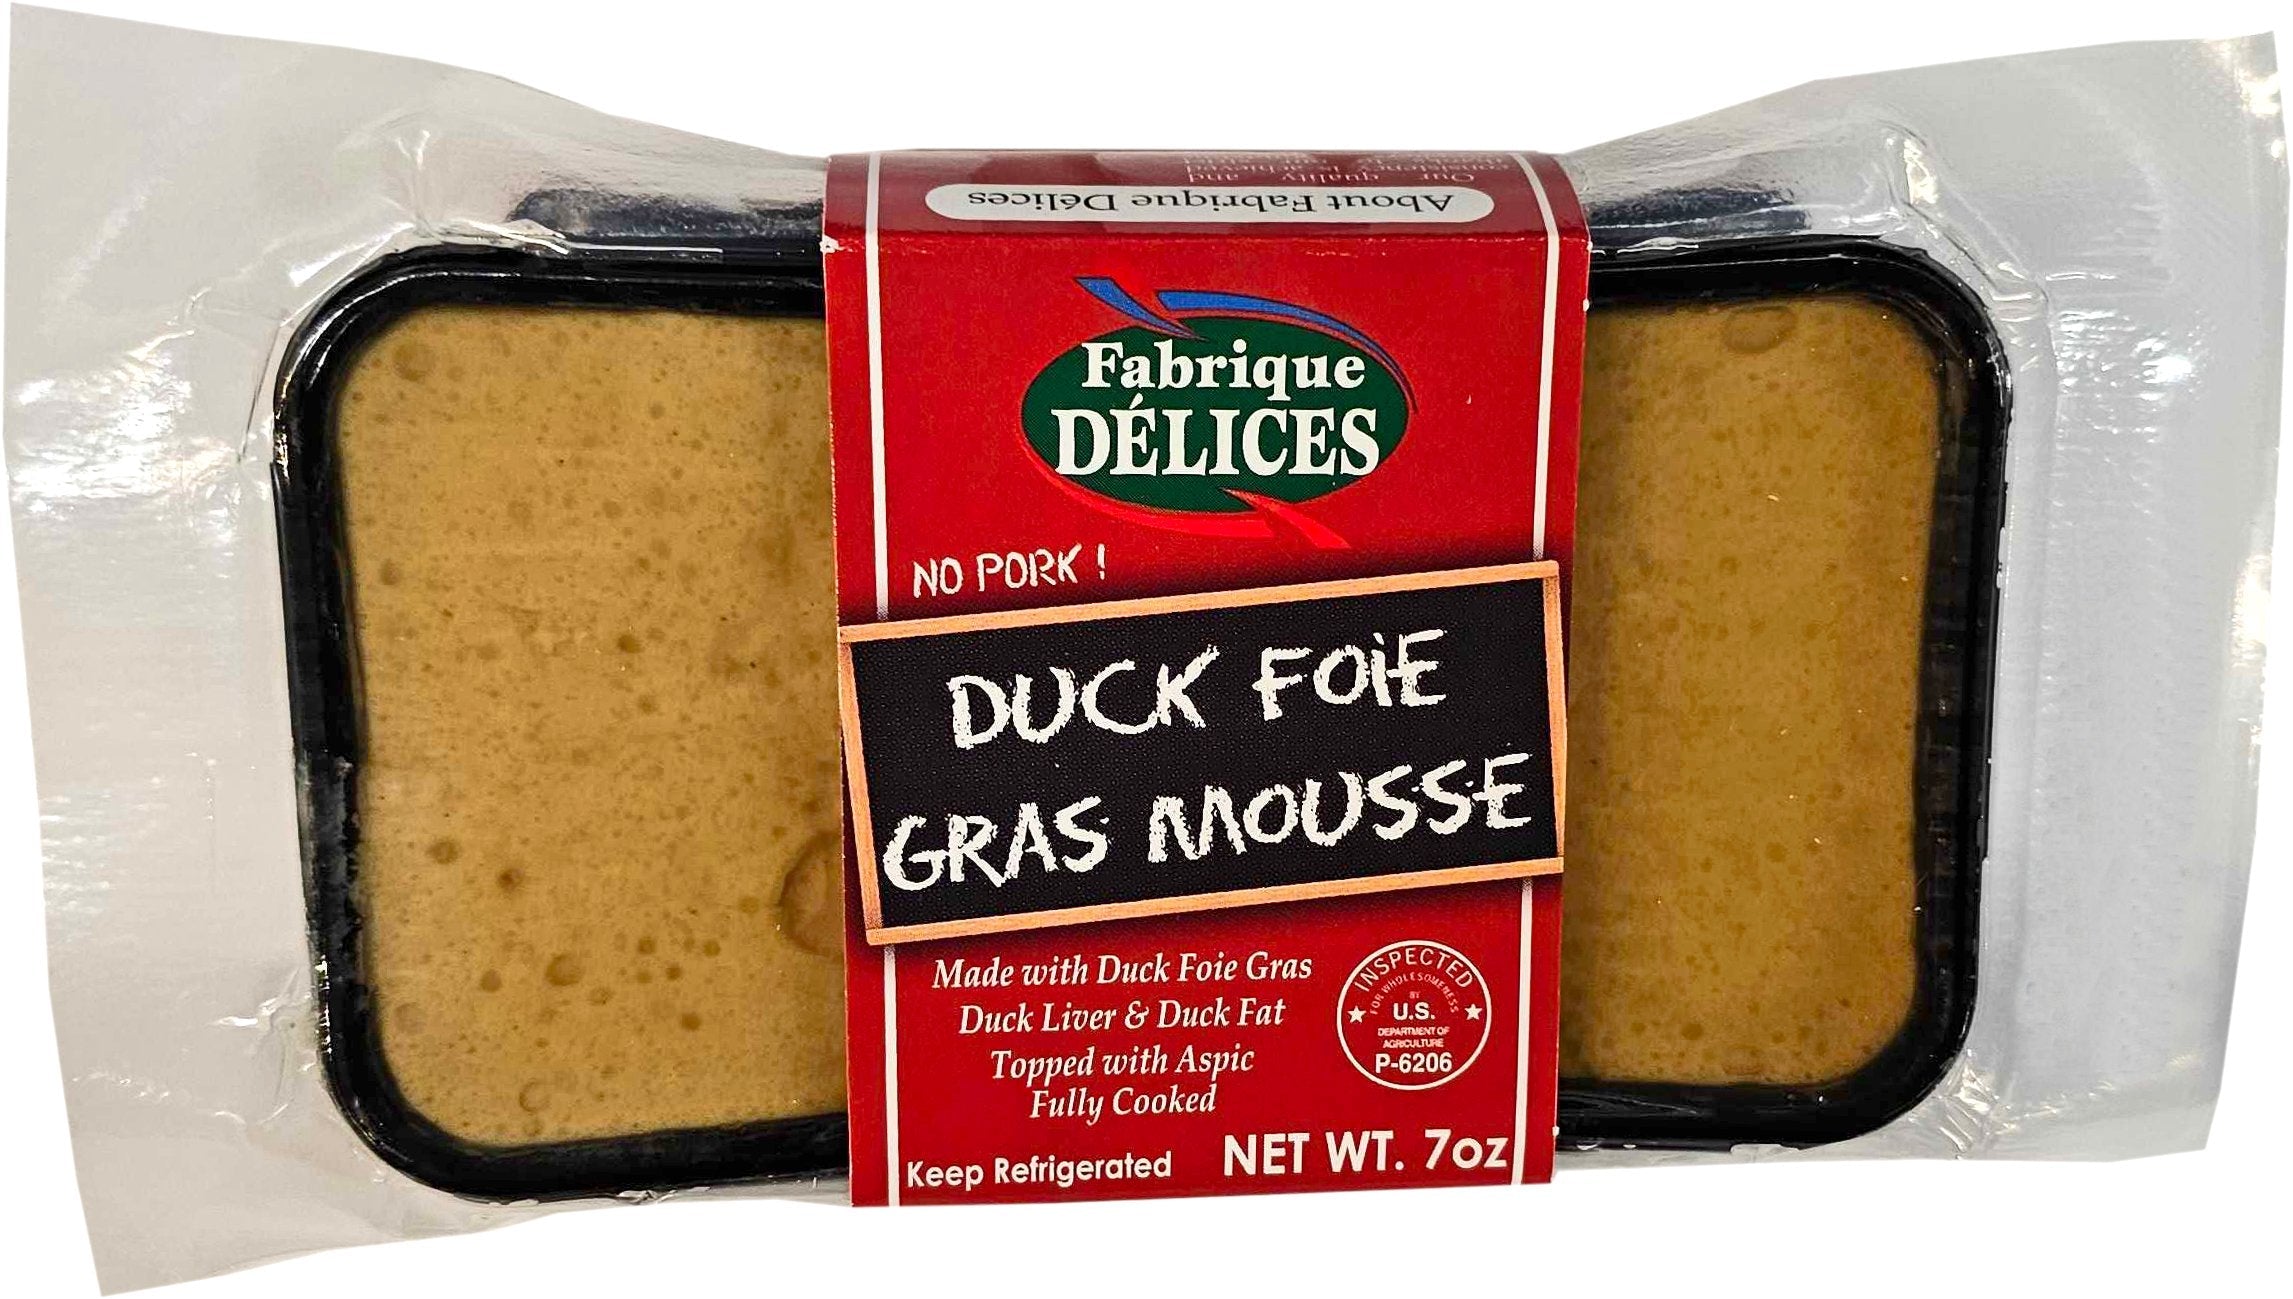 Fabrique Delices Duck Foie Gras Mousse 12oz 6ct